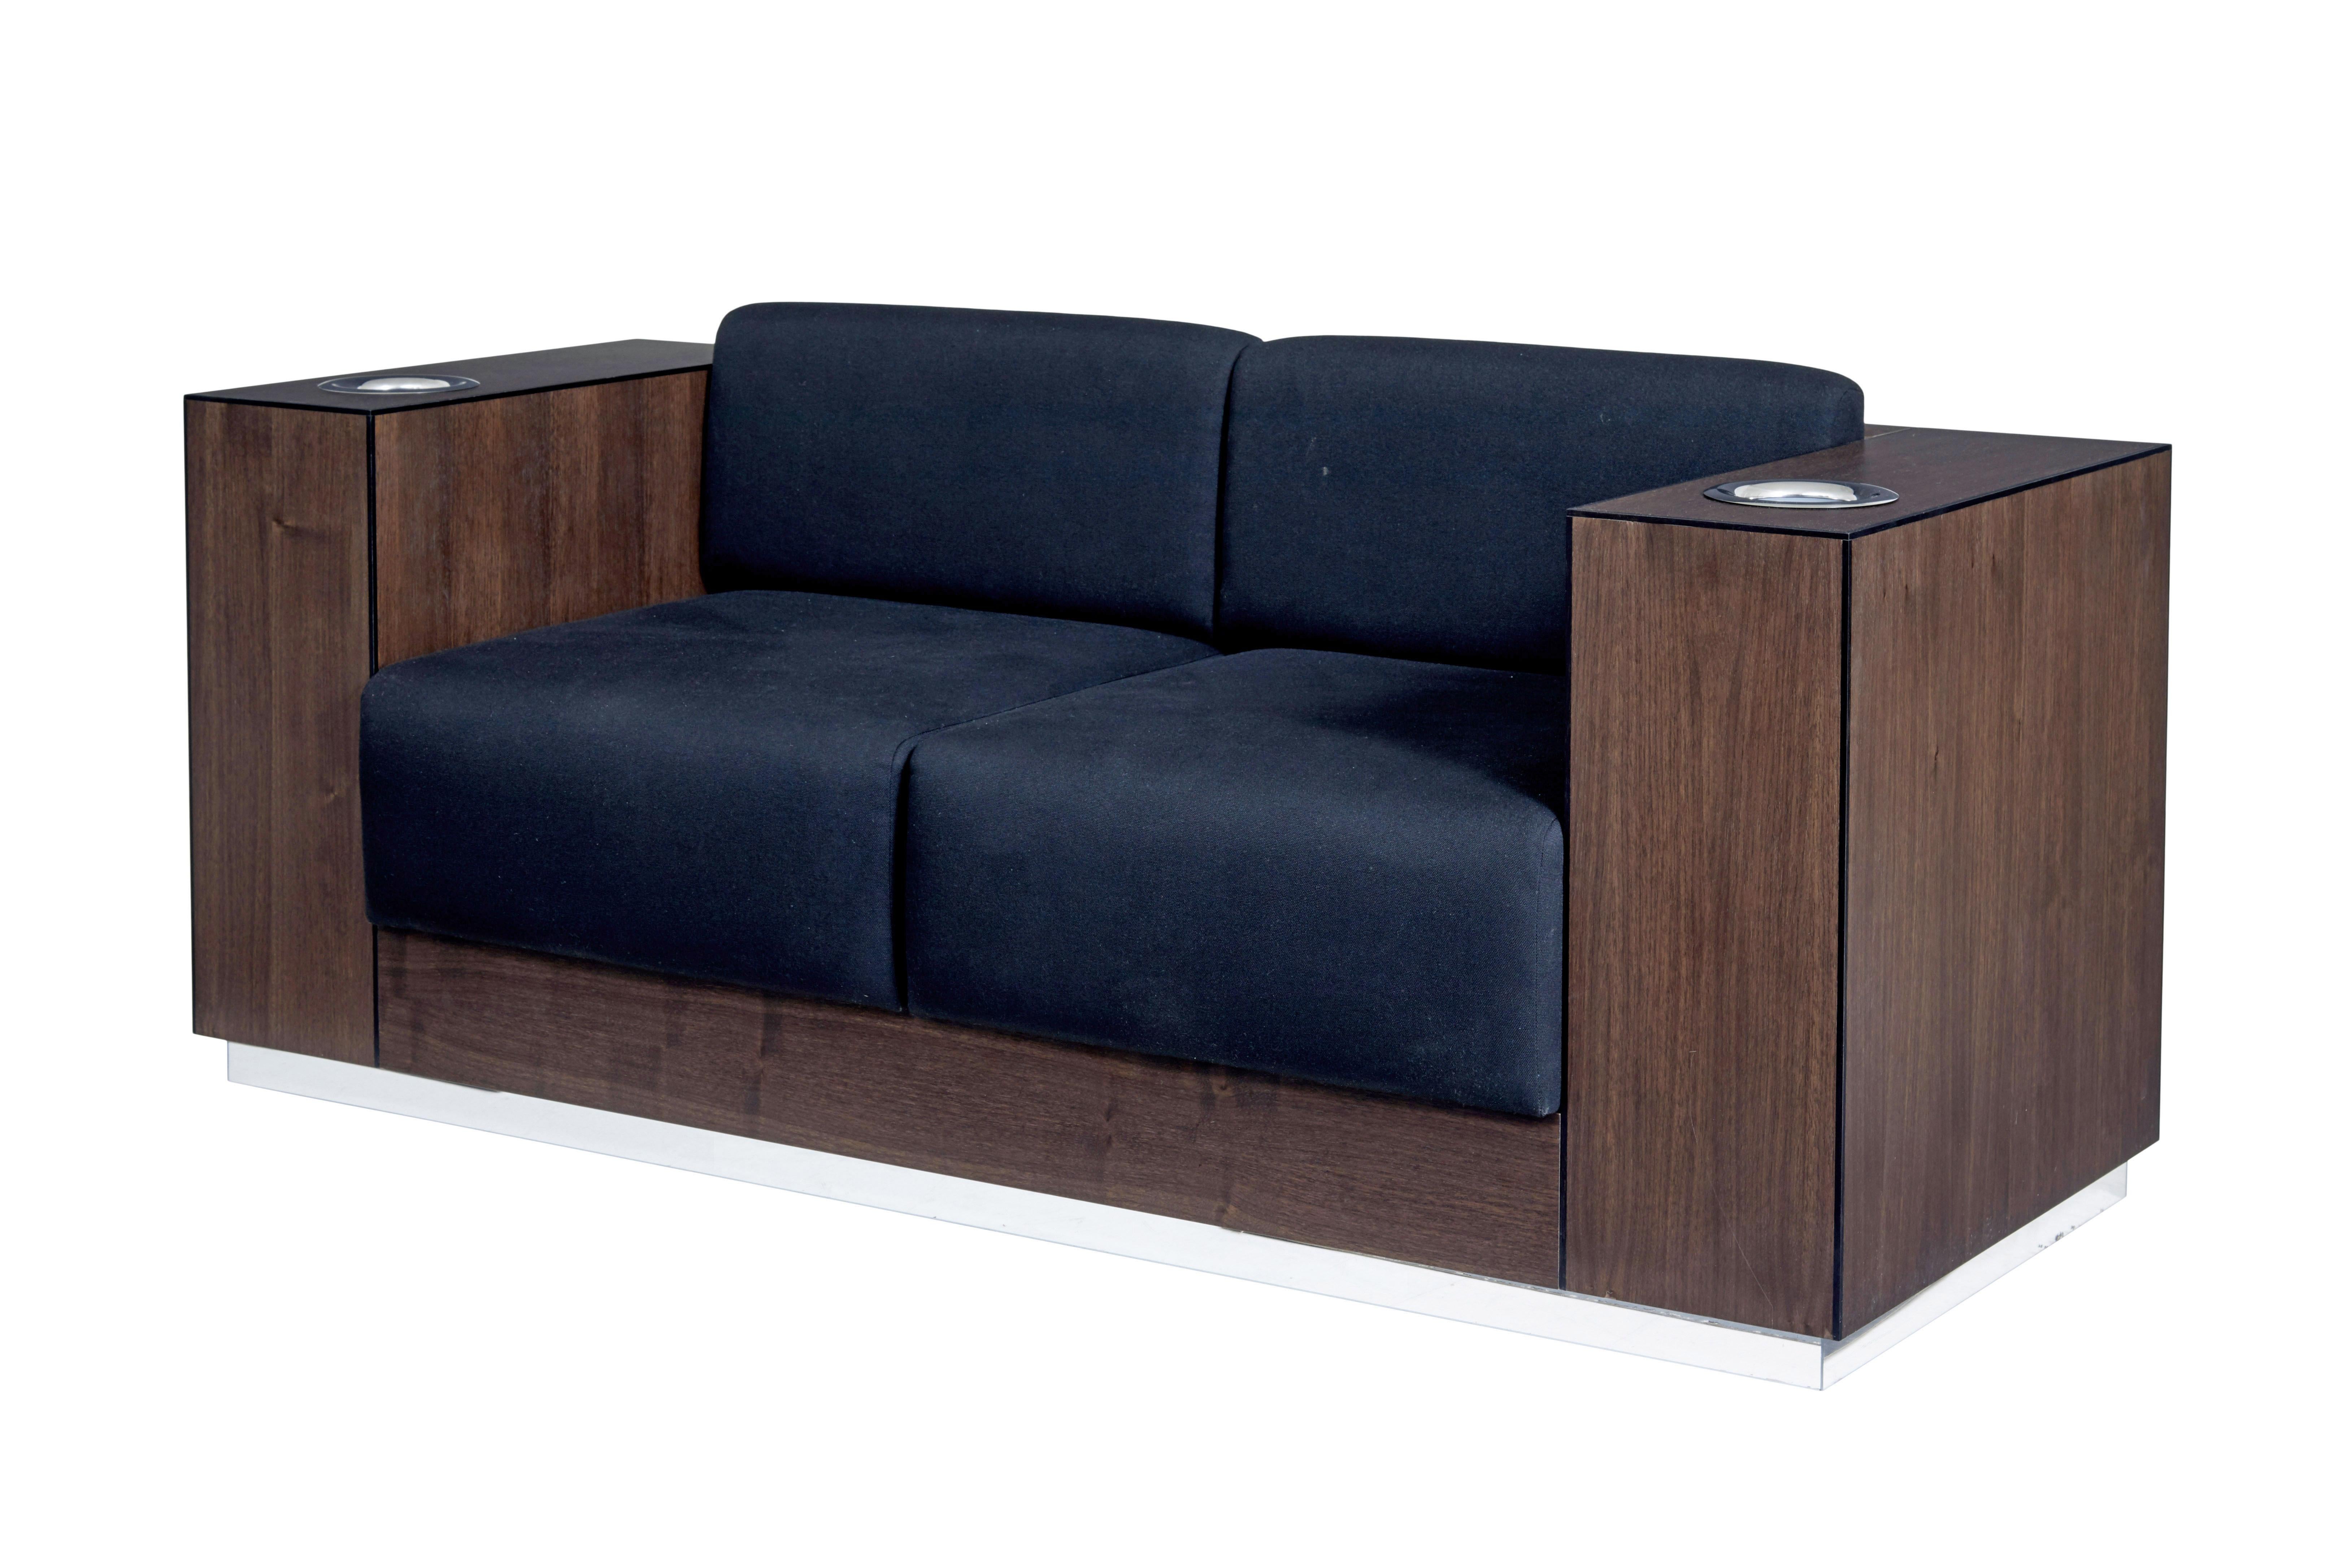 Modernes Sofa aus Nussbaumholz, ausgestattet mit Weinkühlern von Kaelo.

Wir freuen uns, Ihnen dieses einzigartige, maßgeschneiderte Sofa anbieten zu können, das in jedem Arm einen kaelo-Weinkühler enthält.  Dieses Stück wurde für eine Ausstellung